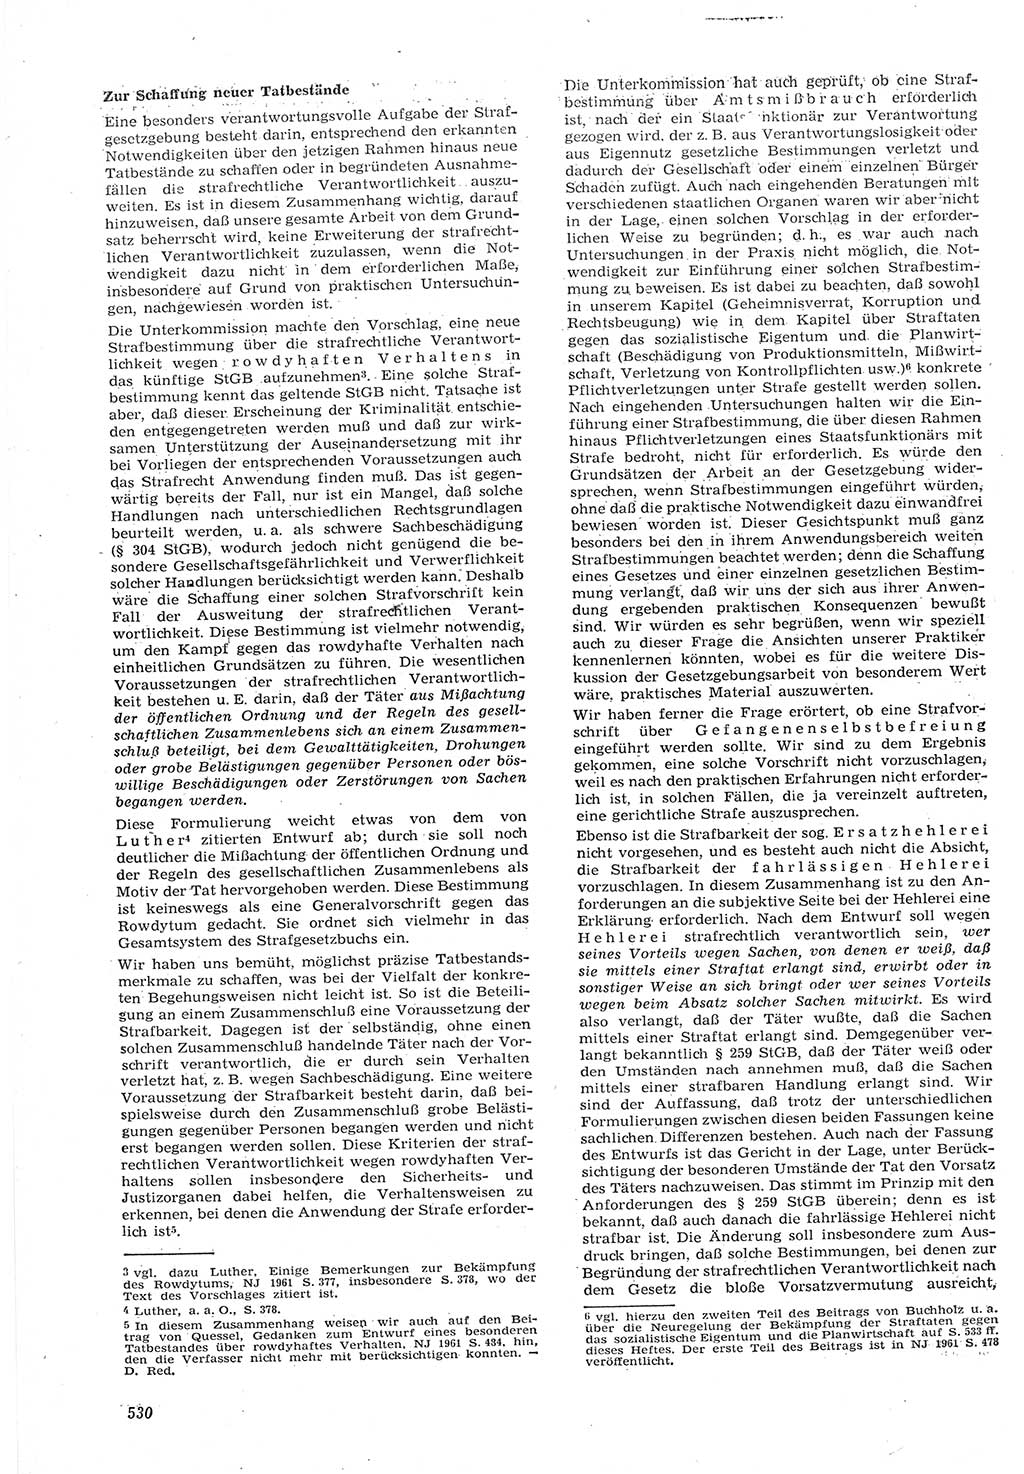 Neue Justiz (NJ), Zeitschrift für Recht und Rechtswissenschaft [Deutsche Demokratische Republik (DDR)], 15. Jahrgang 1961, Seite 530 (NJ DDR 1961, S. 530)